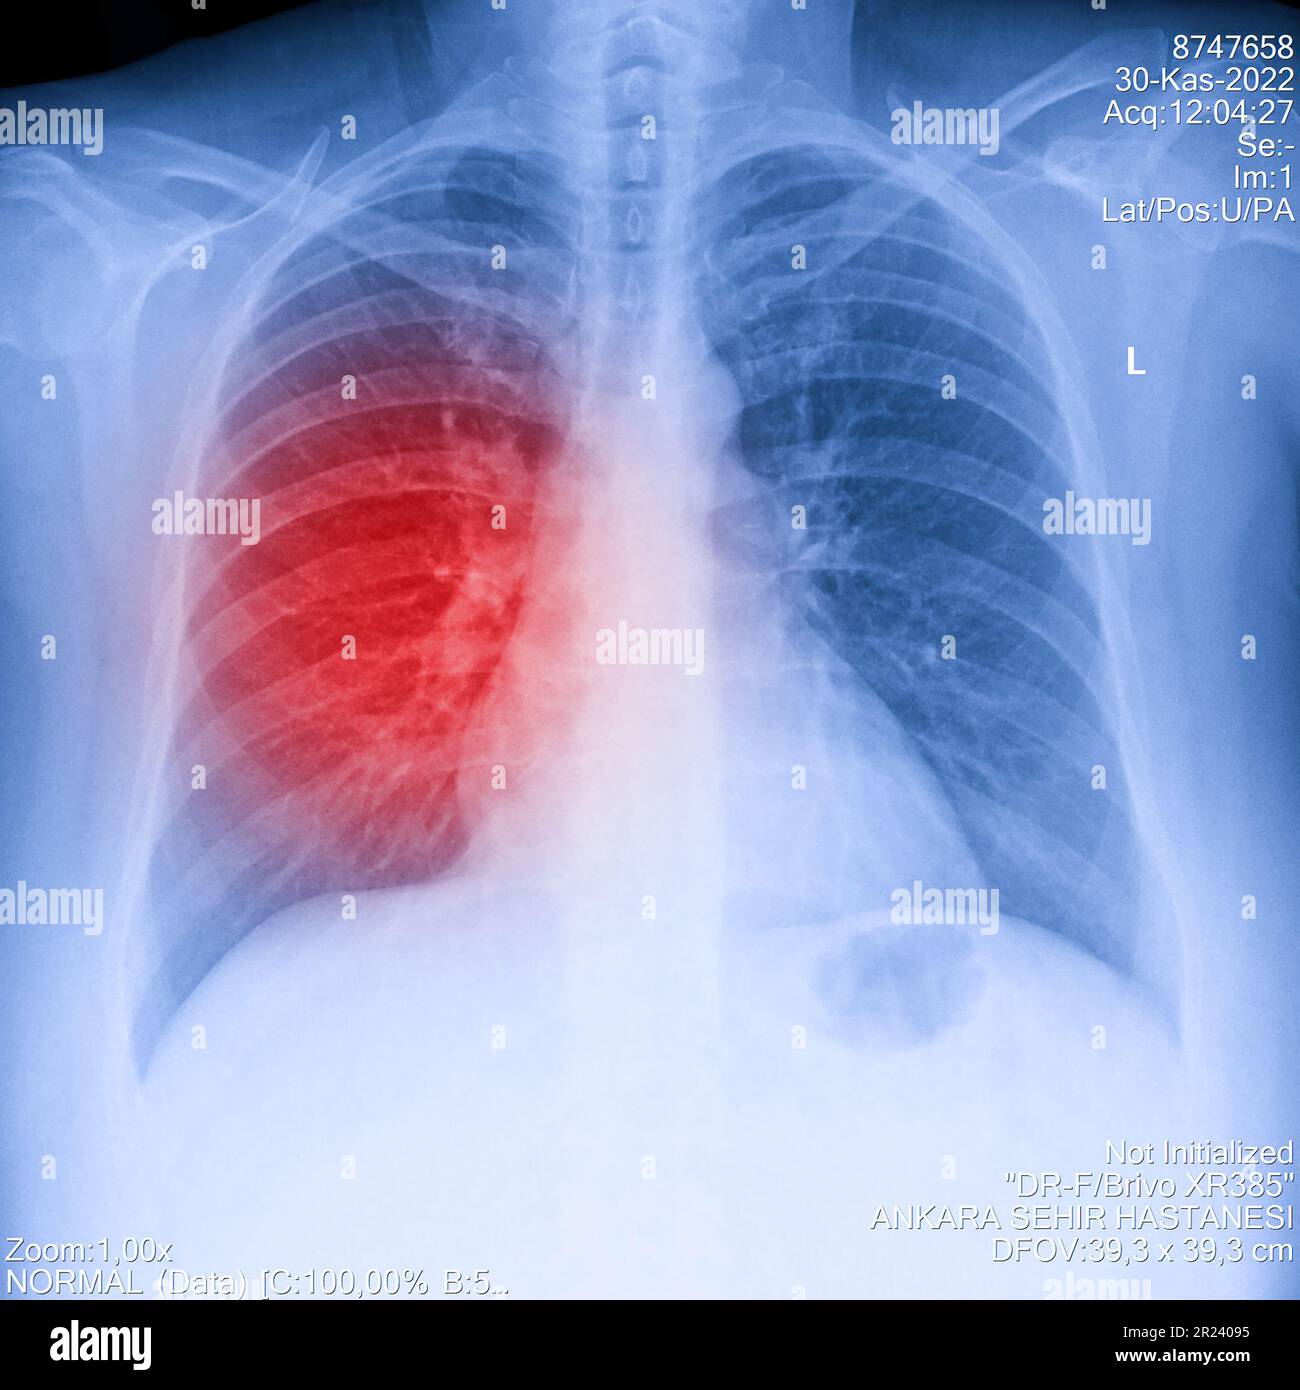 Immagine radiografica del torace umano per una diagnosi medica, mostra l'area del dolore con il rosso. Radiografia toracica per esame polmonare, PA in alto a destra Foto Stock